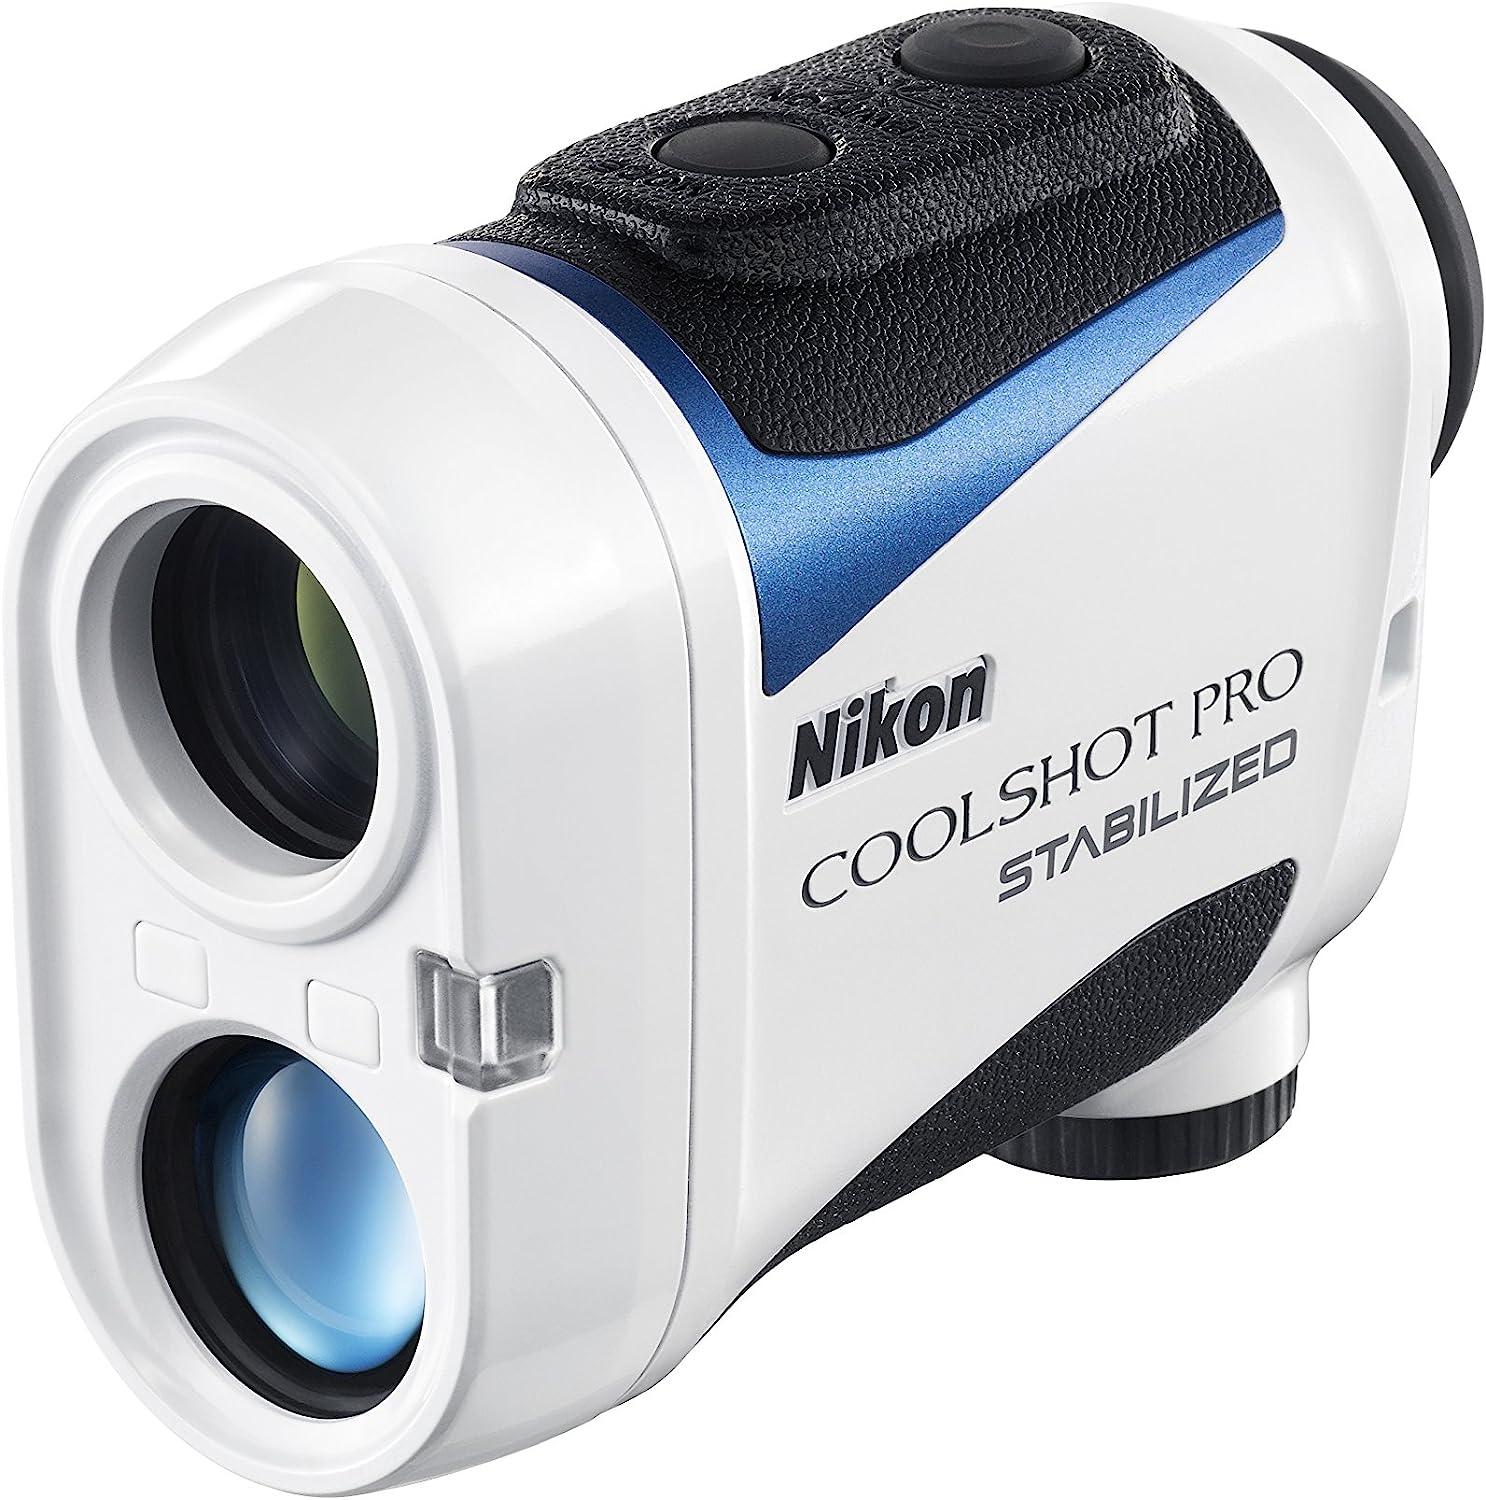 Nikon Coolshot Pro Stabilized Golf Rangefinder Standard Version